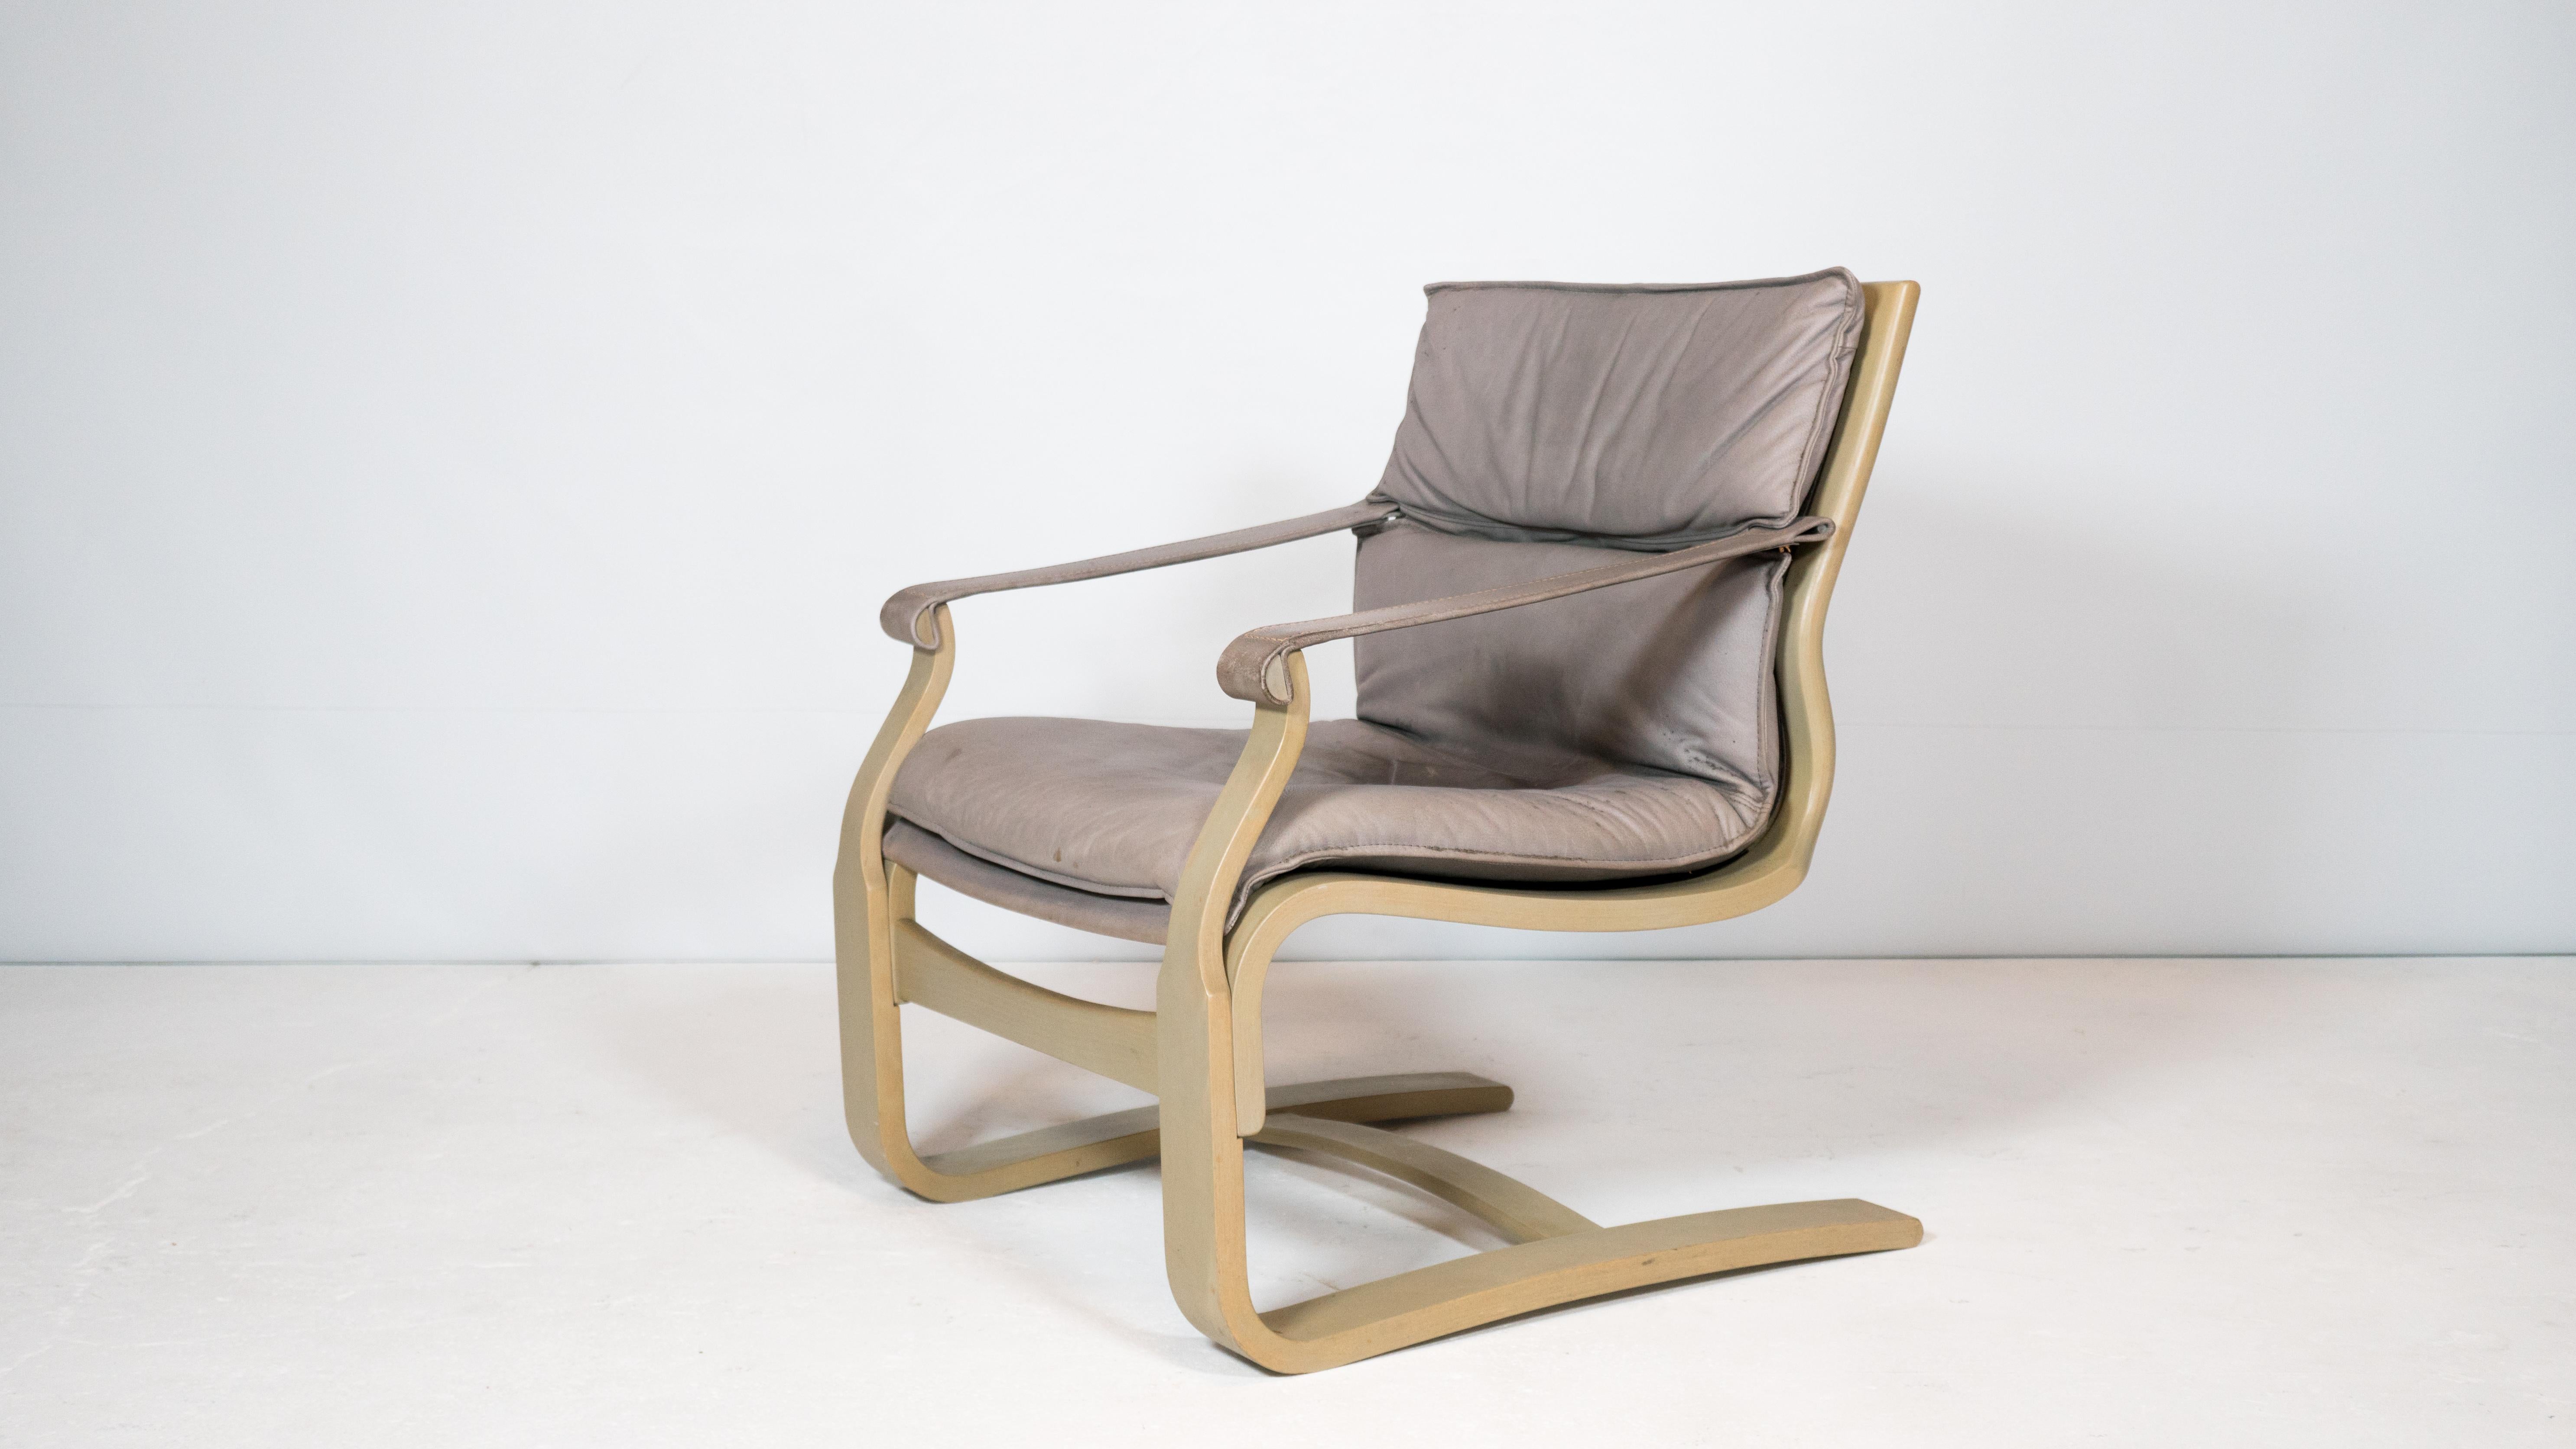 Ake Fribytter Lounge Chair für Nelo Möbel aus Schweden, ca. 1970er Jahre. Geformter Bugholzrahmen, der eine gewisse Flexibilität bietet und beim Sitzen ein angenehmes Schwingen erzeugt. Graues gepolstertes Lederkissen (abnehmbar) und Armlehnen.